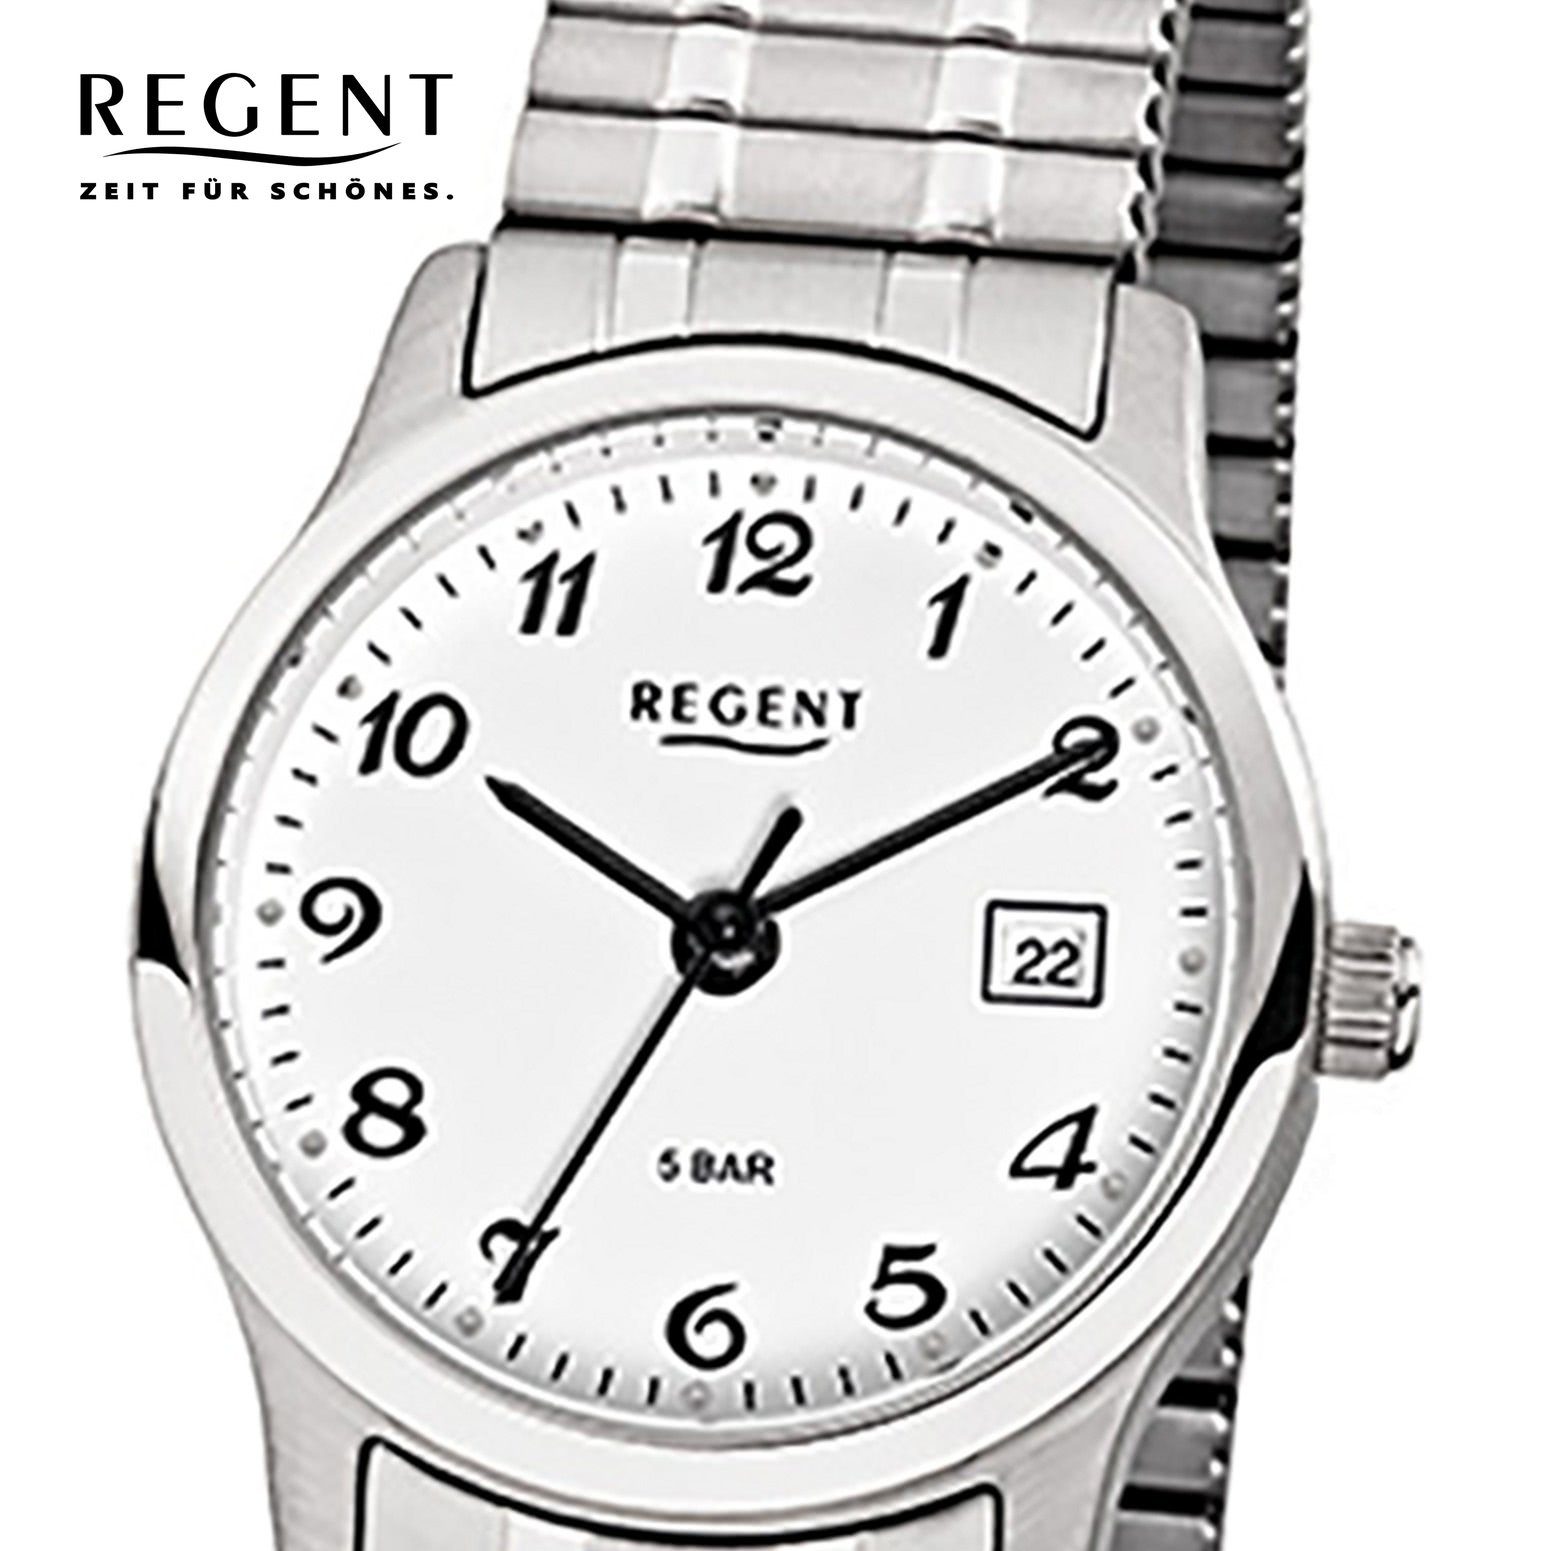 (ca. Herren-Armbanduhr Quarzuhr Damen, Regent Damen Edelstahlarmband 27mm), klein Armbanduhr Herren Regent silber, rund,